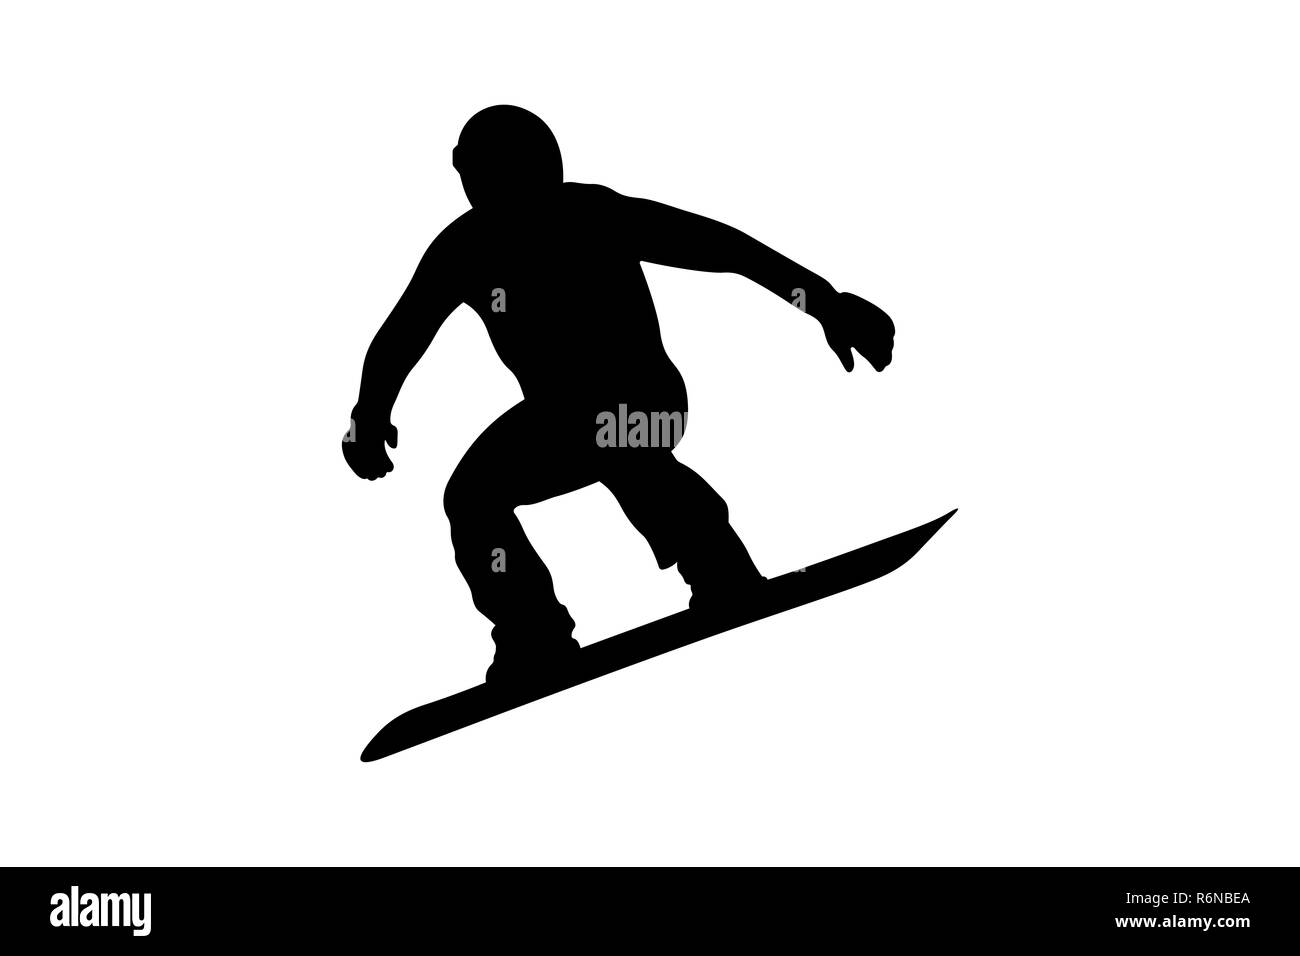 Homme snowboarder sautant sur snowboard silhouette noire Banque D'Images